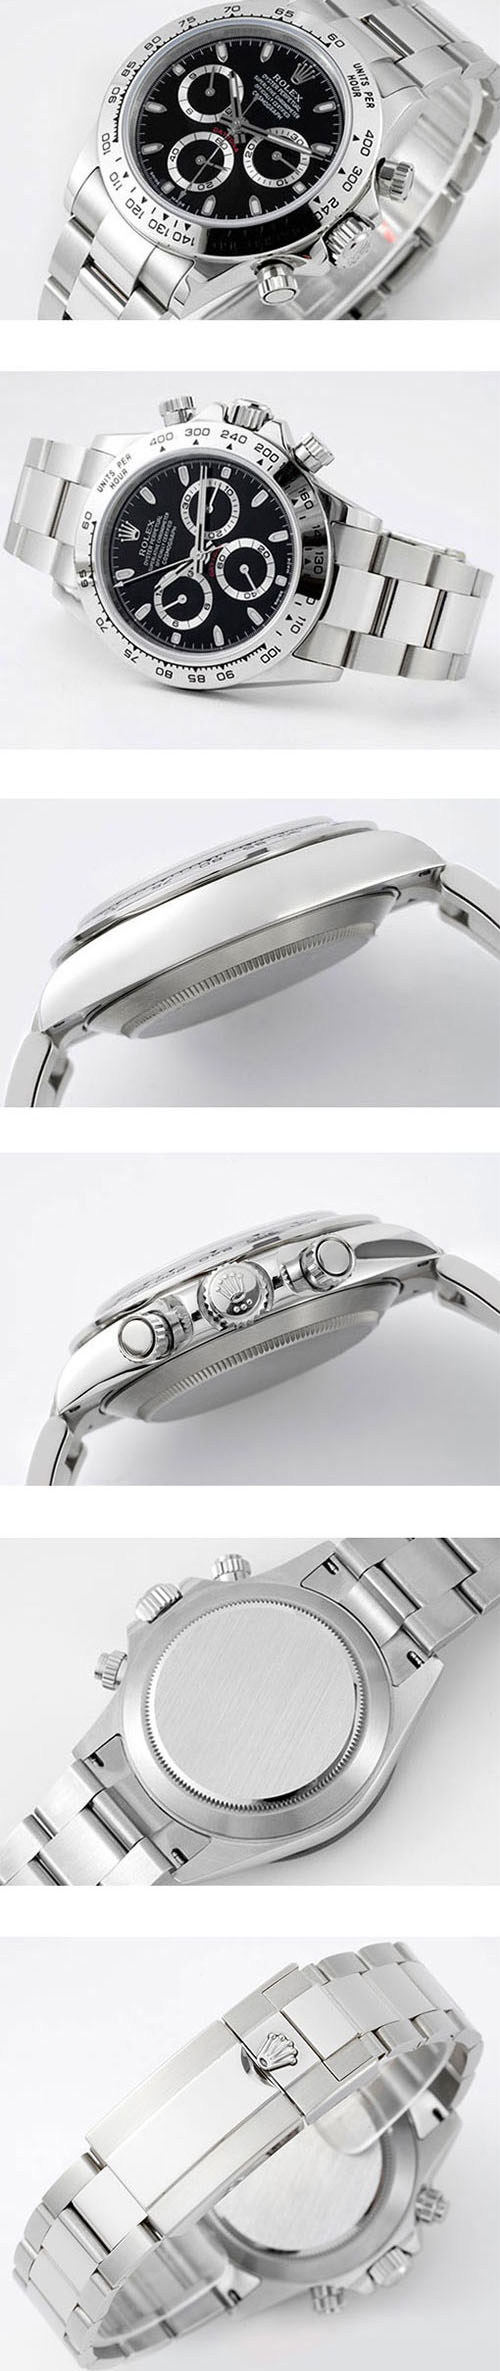 【優れた精度】ロレックス スーパーコピー時計 コスモグラフ デイトナ m116509-0055 (N工場最新入荷) オートマティック 